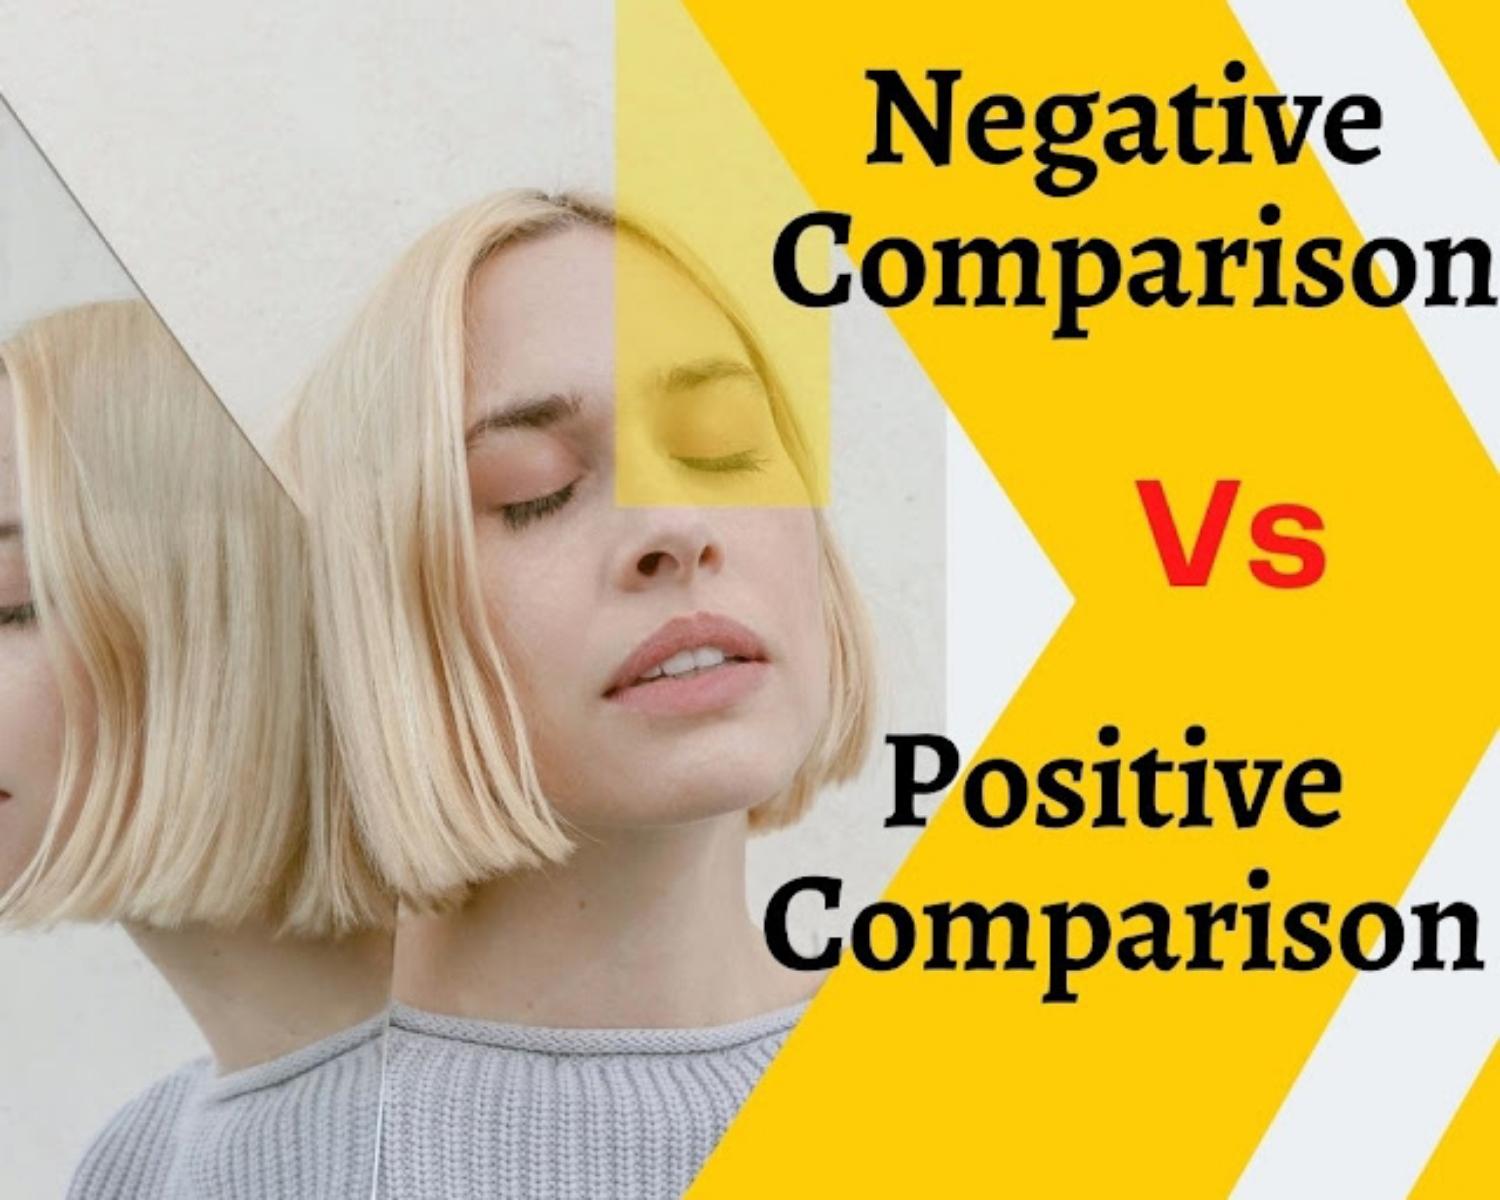 Why Is Negative Comparison Vs Positive Comparison is So Famous? 